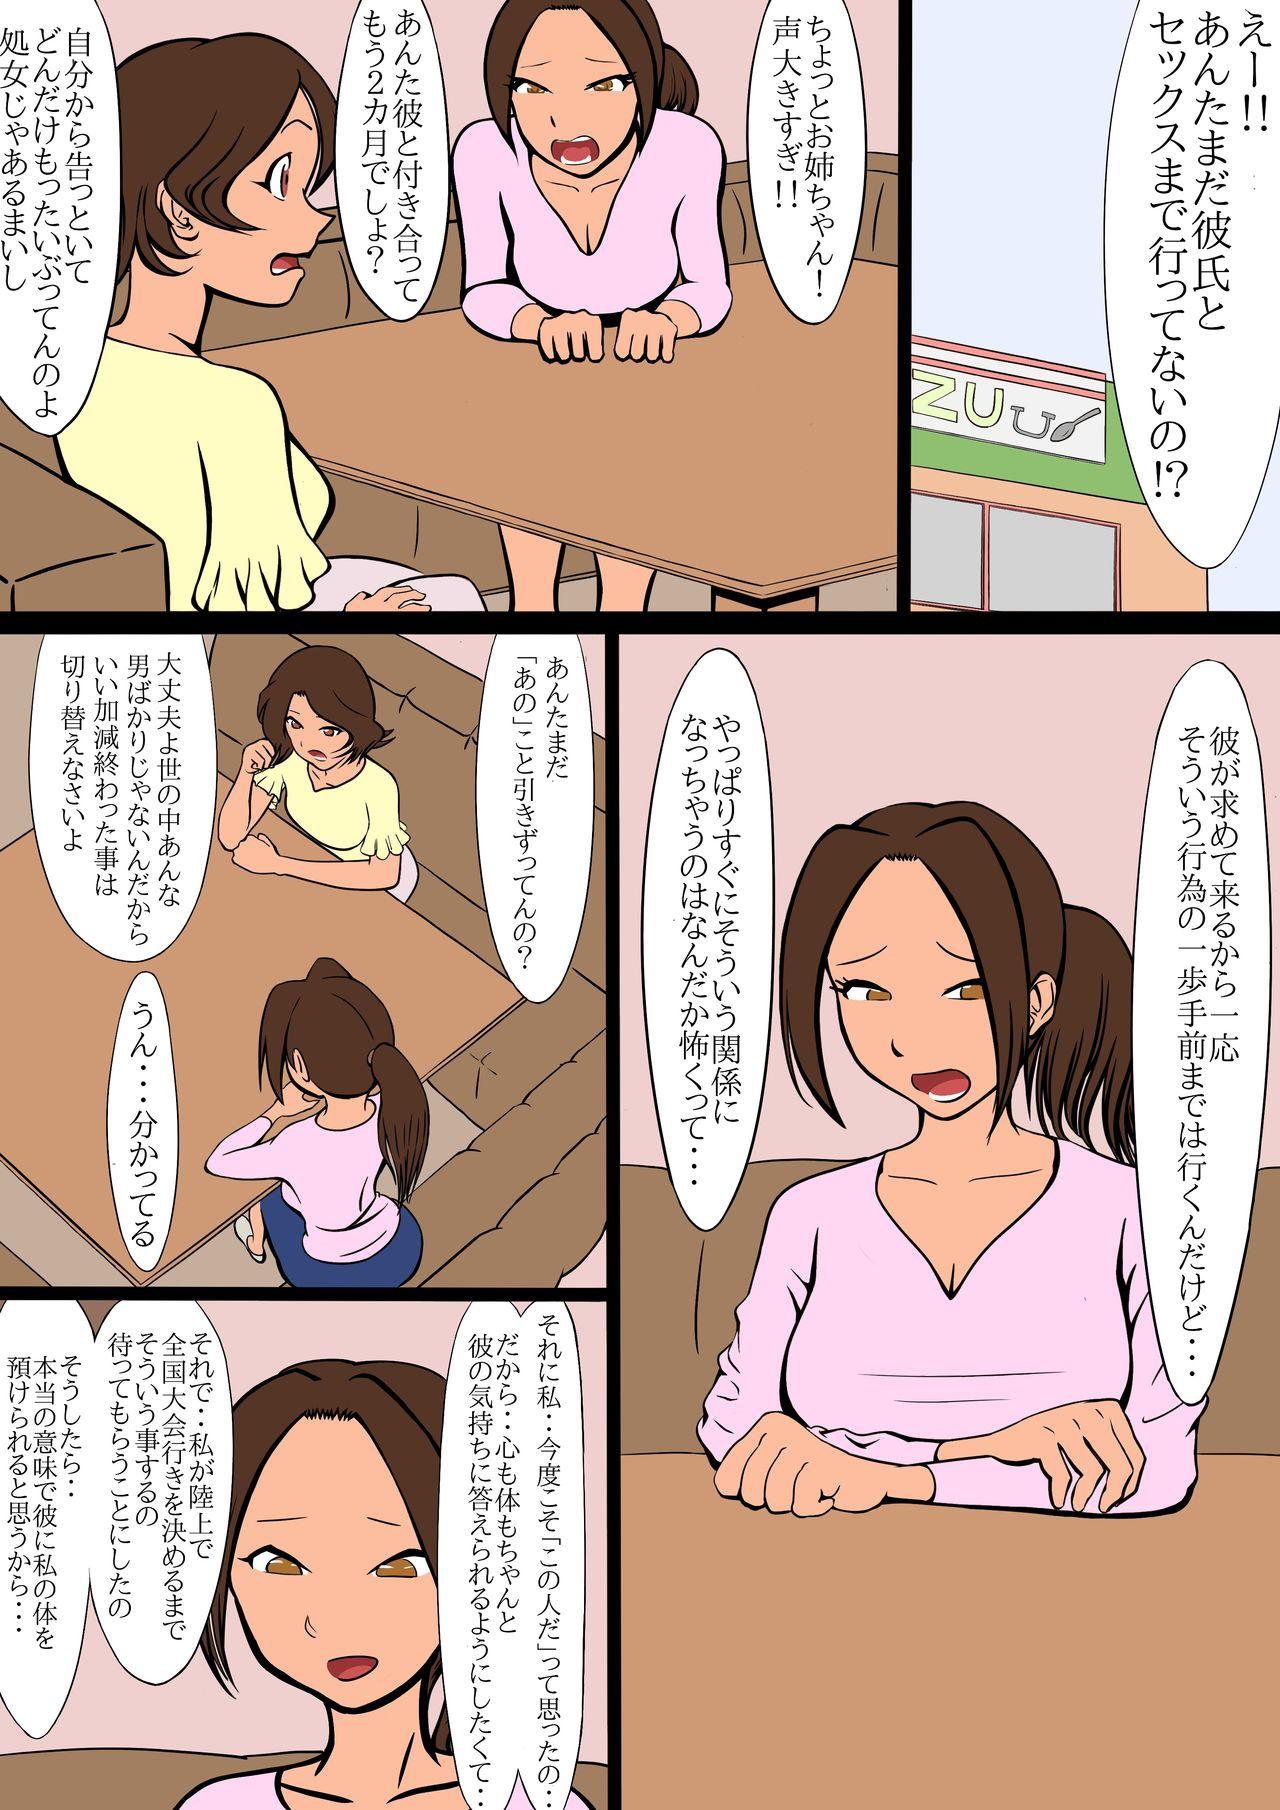 Amante netorare furasshu bakku - Original Bribe - Page 11